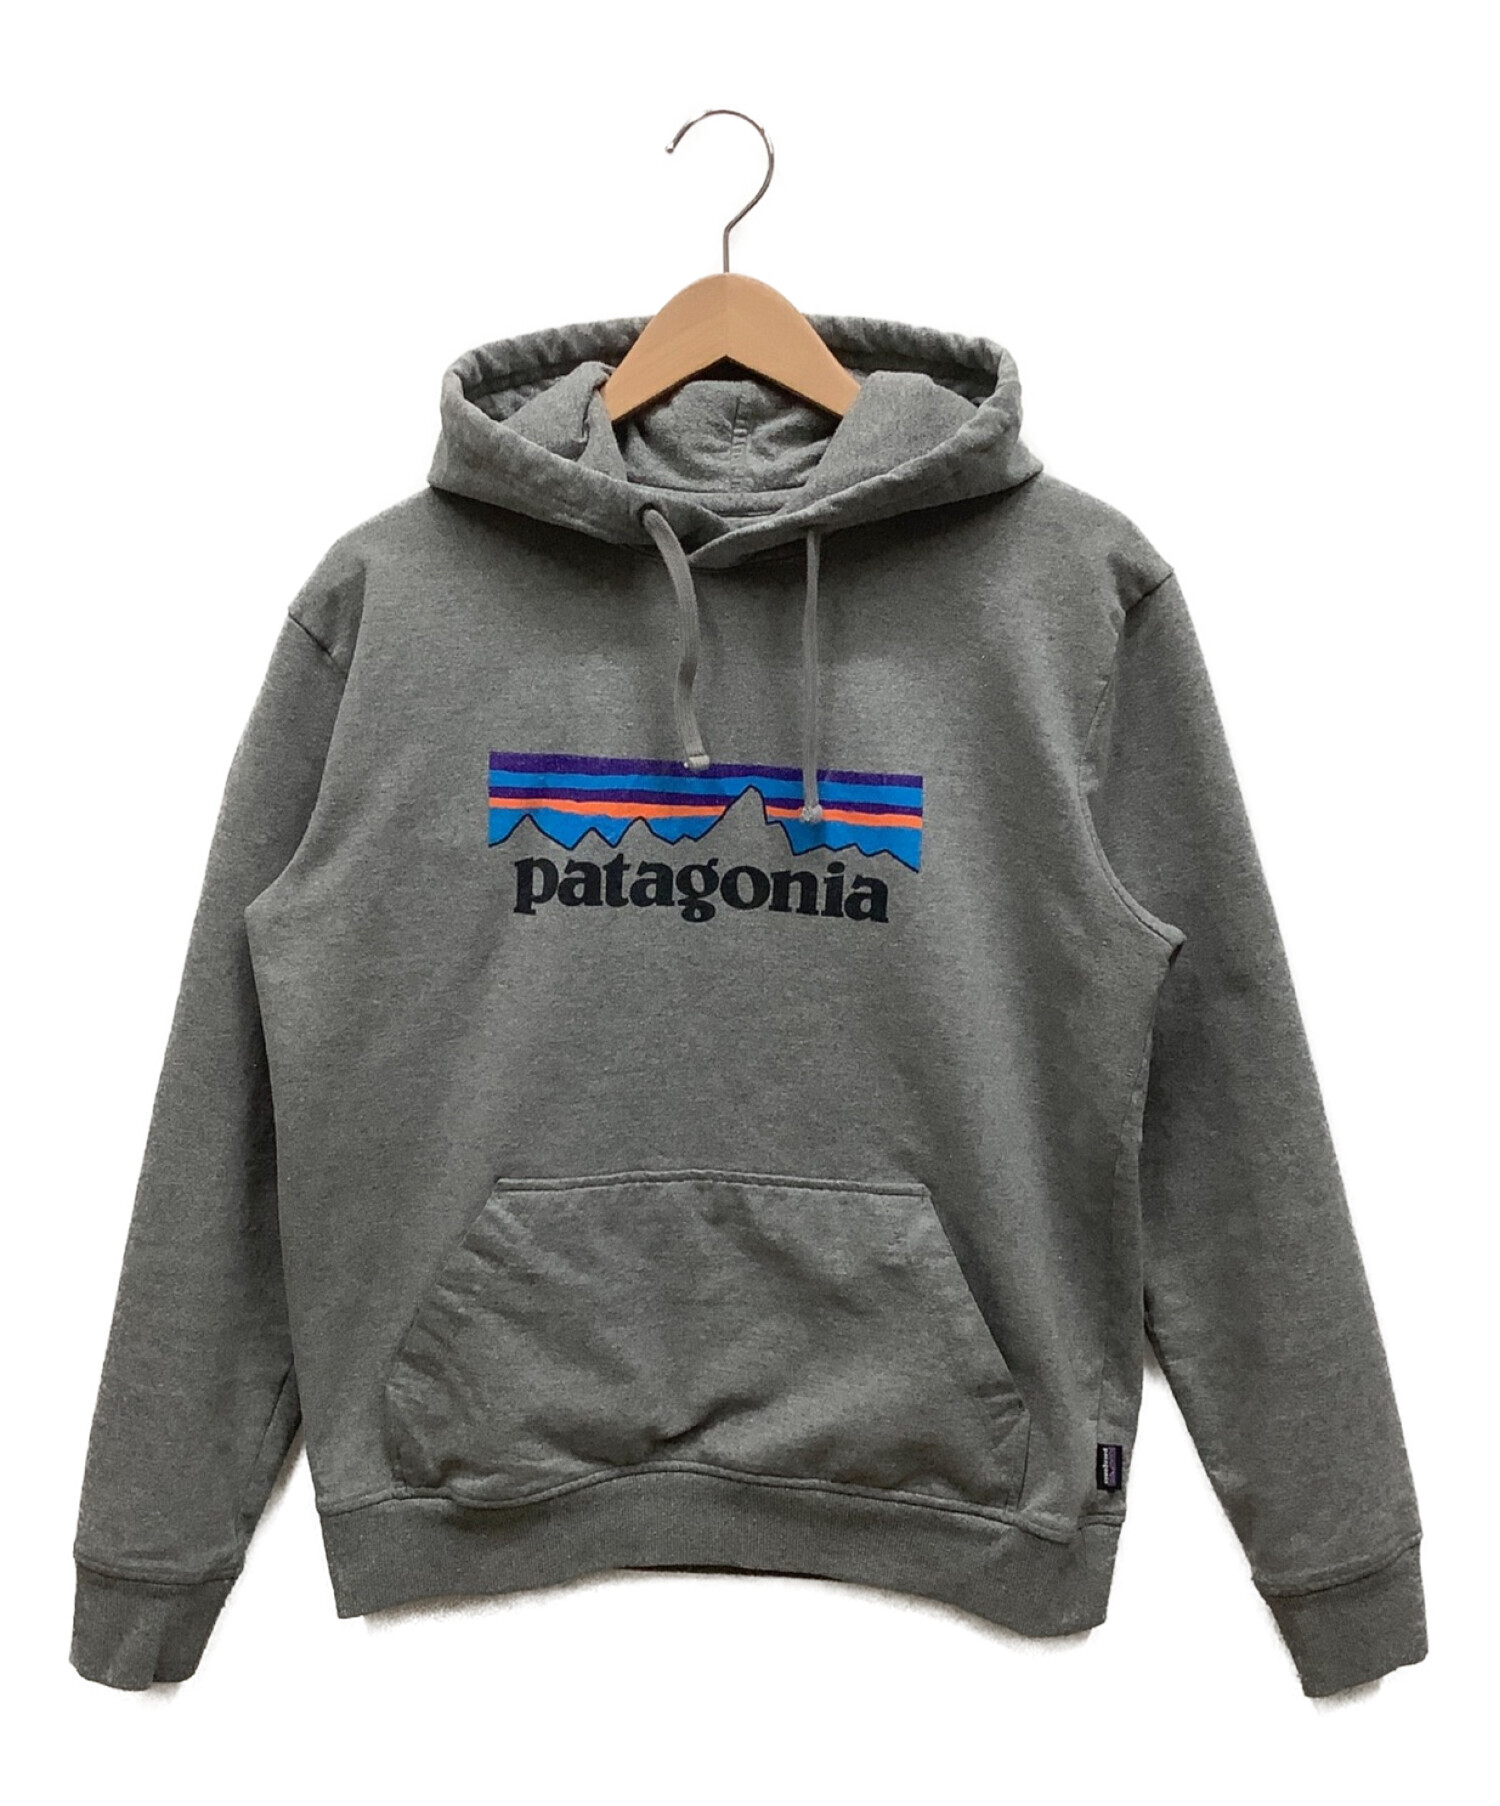 Patagonia (パタゴニア) パーカー グレー サイズ:M